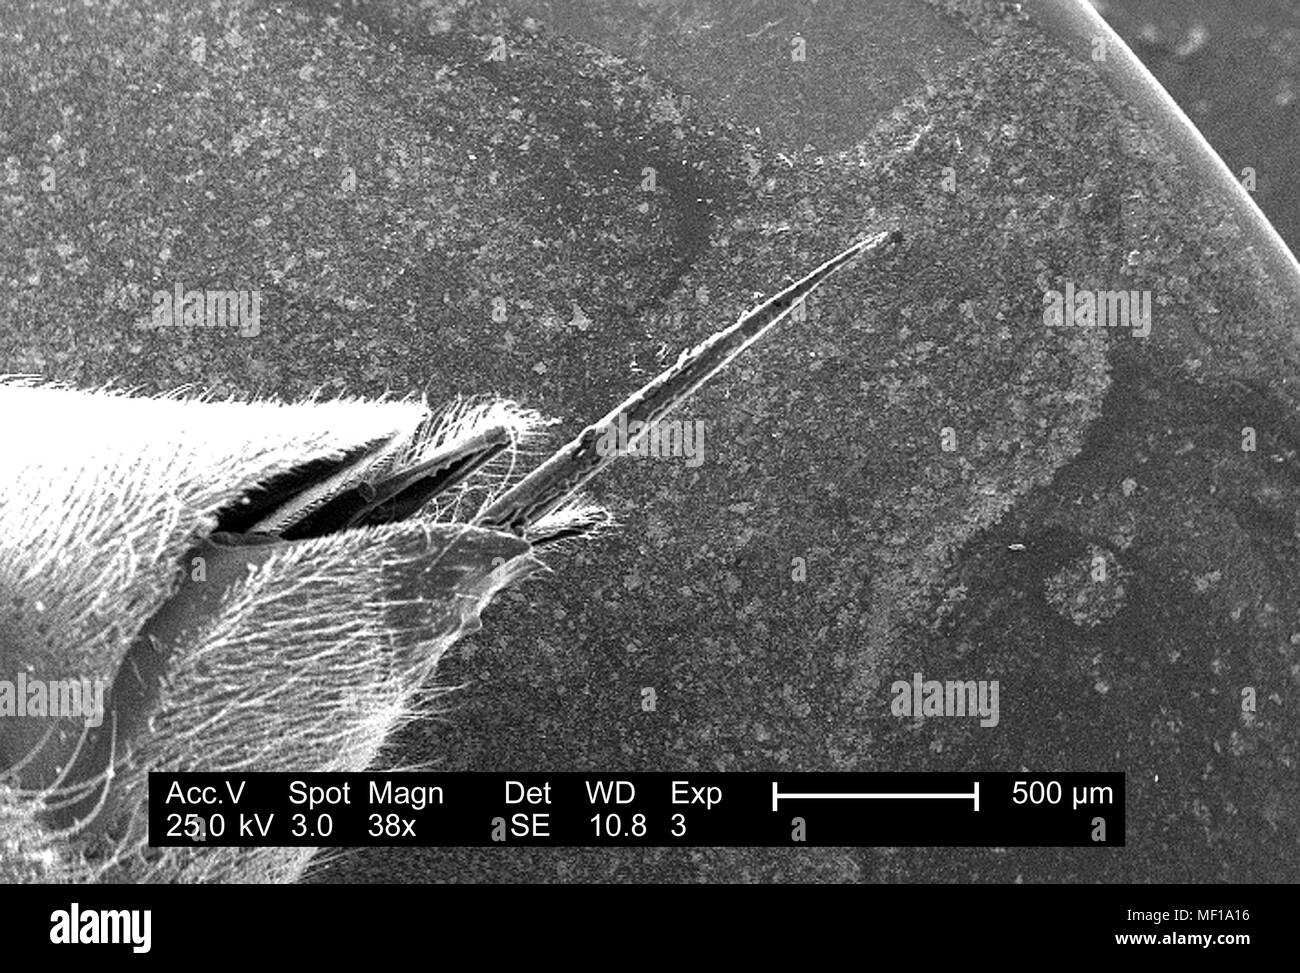 Ultrastrutturali dettagli morfologiche di bee stinger apparecchiatura illustrata in basso la scansione ingrandita al microscopio elettronico (SEM) immagine, 2005. Immagine cortesia di centri per il controllo delle malattie (CDC) / Janice Haney Carr, Oren Mayer. () Foto Stock